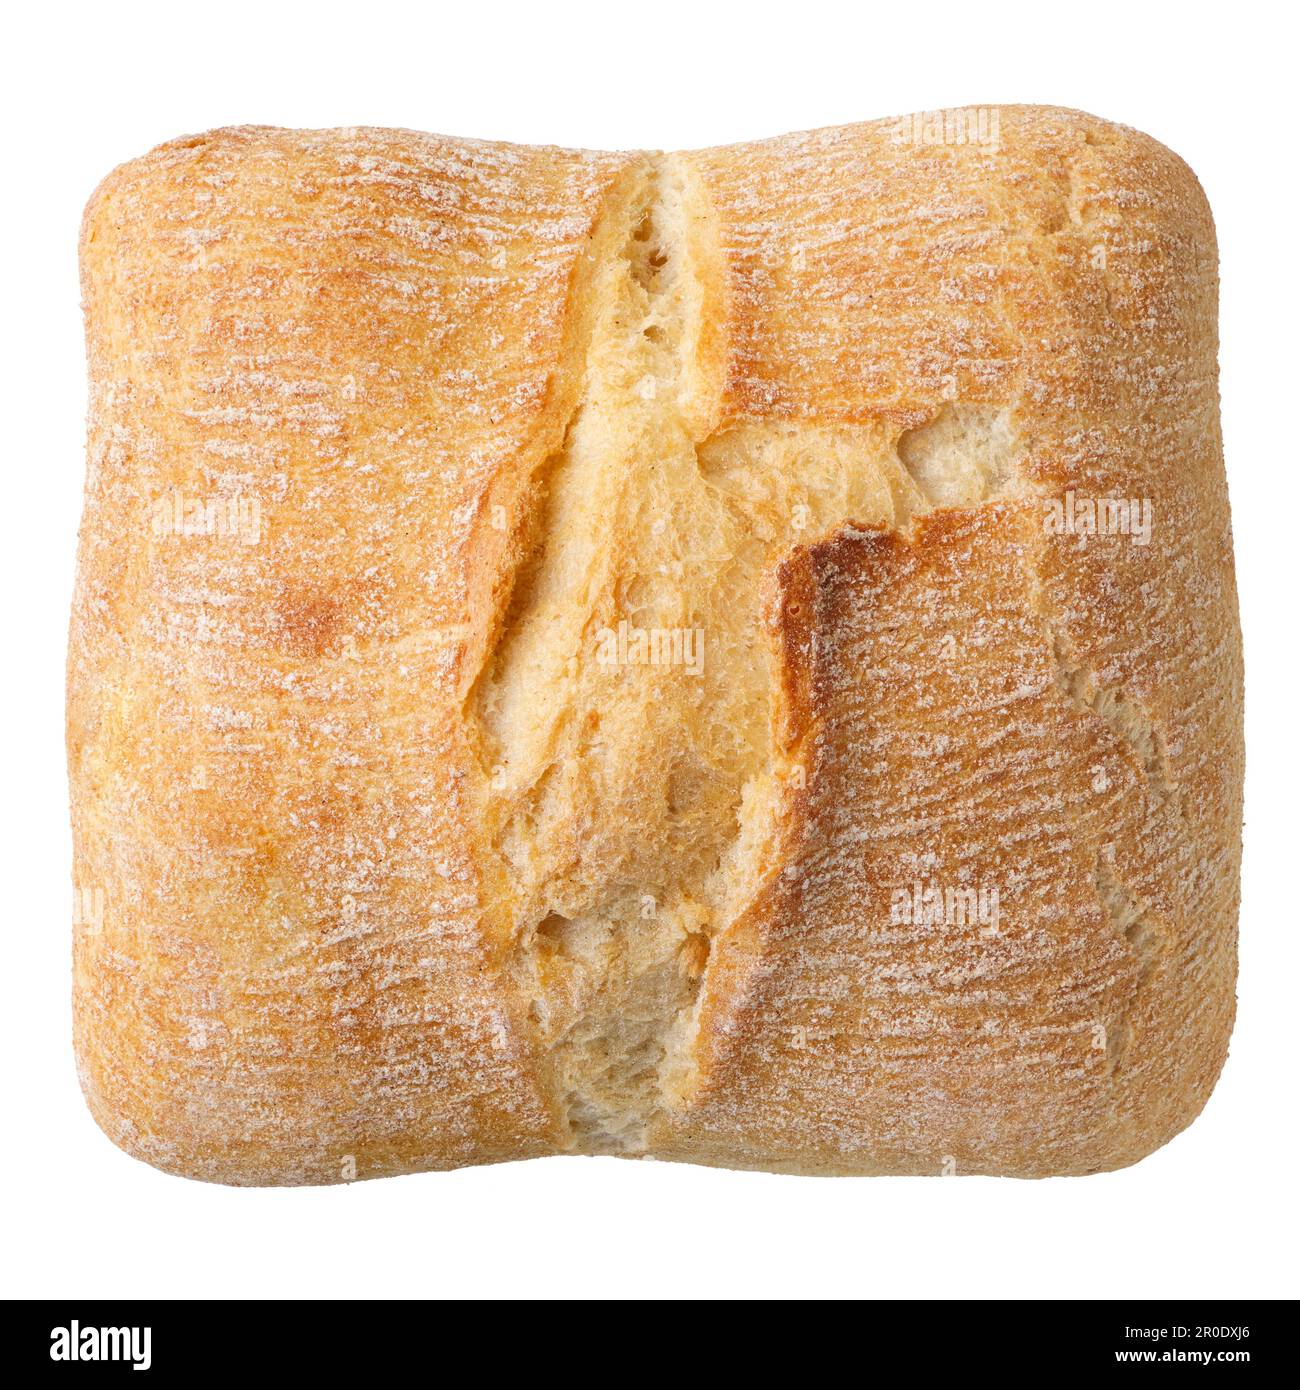 Tradizionale pane italiano fatto in casa, ciabatta, con olive nere, isolato su sfondo bianco Foto Stock